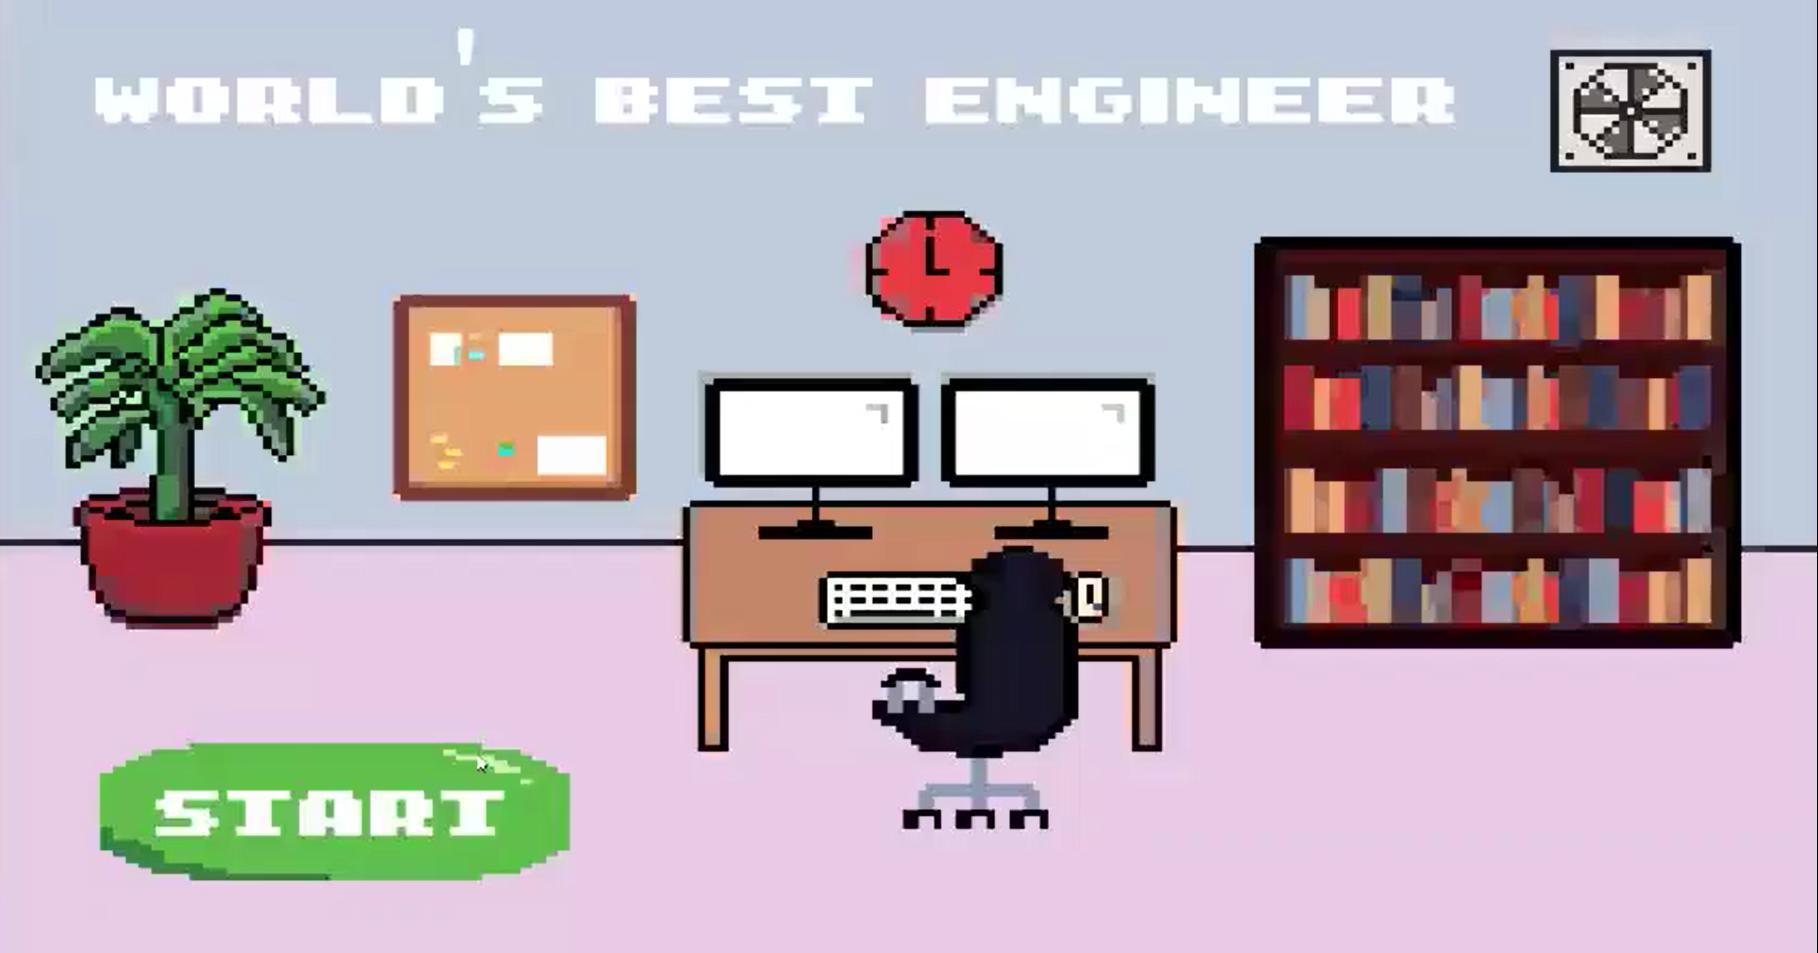 World best engineer. Инженер из компьютерной игры. The World’s best Engineer.